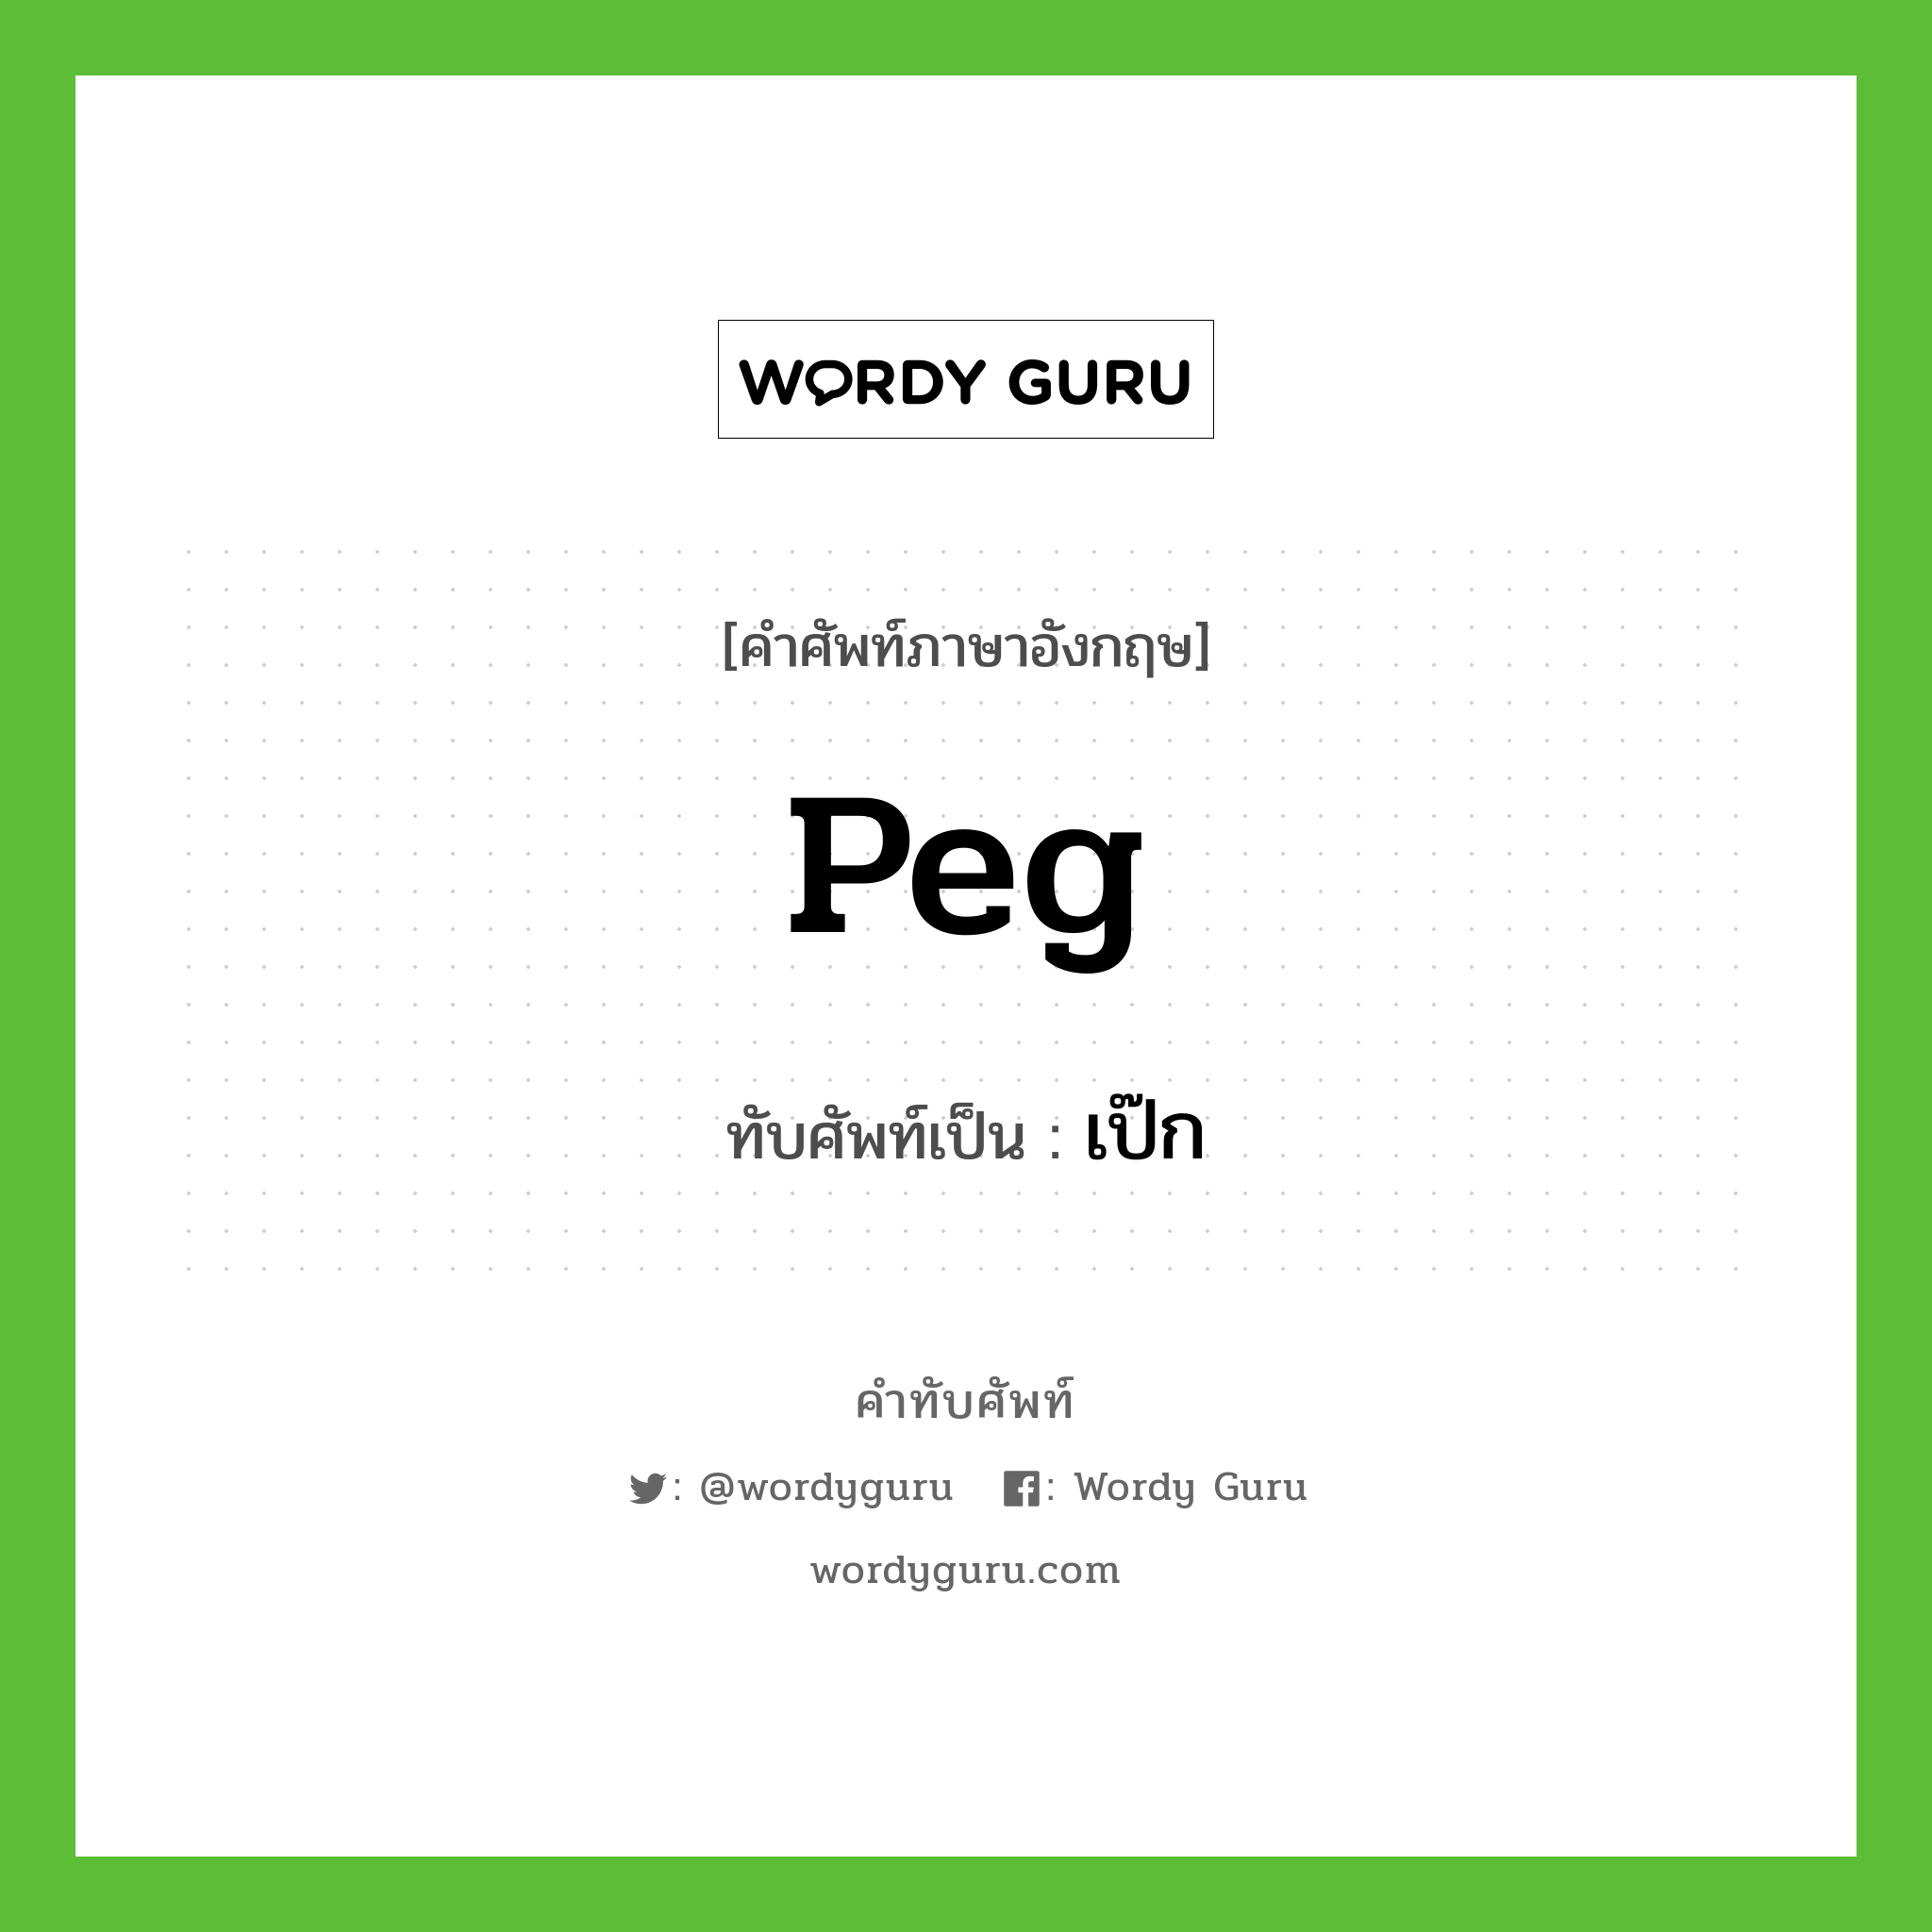 peg เขียนเป็นคำไทยว่าอะไร?, คำศัพท์ภาษาอังกฤษ peg ทับศัพท์เป็น เป๊ก